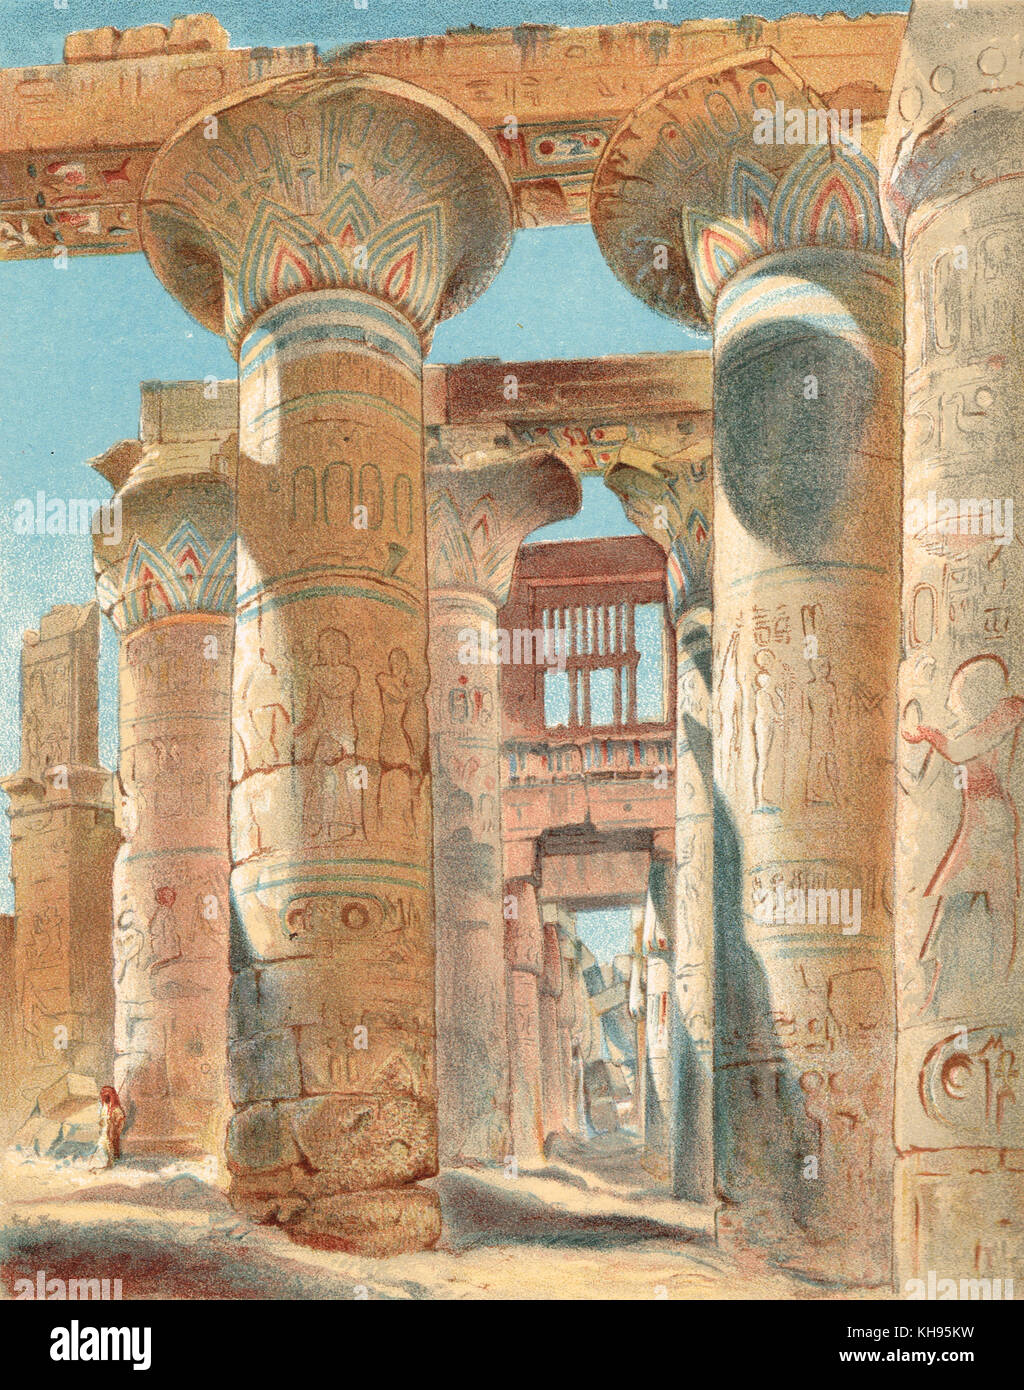 Grande hypostyle hall, Karnak, Egitto, secolo XIX Litografia a colori Foto Stock